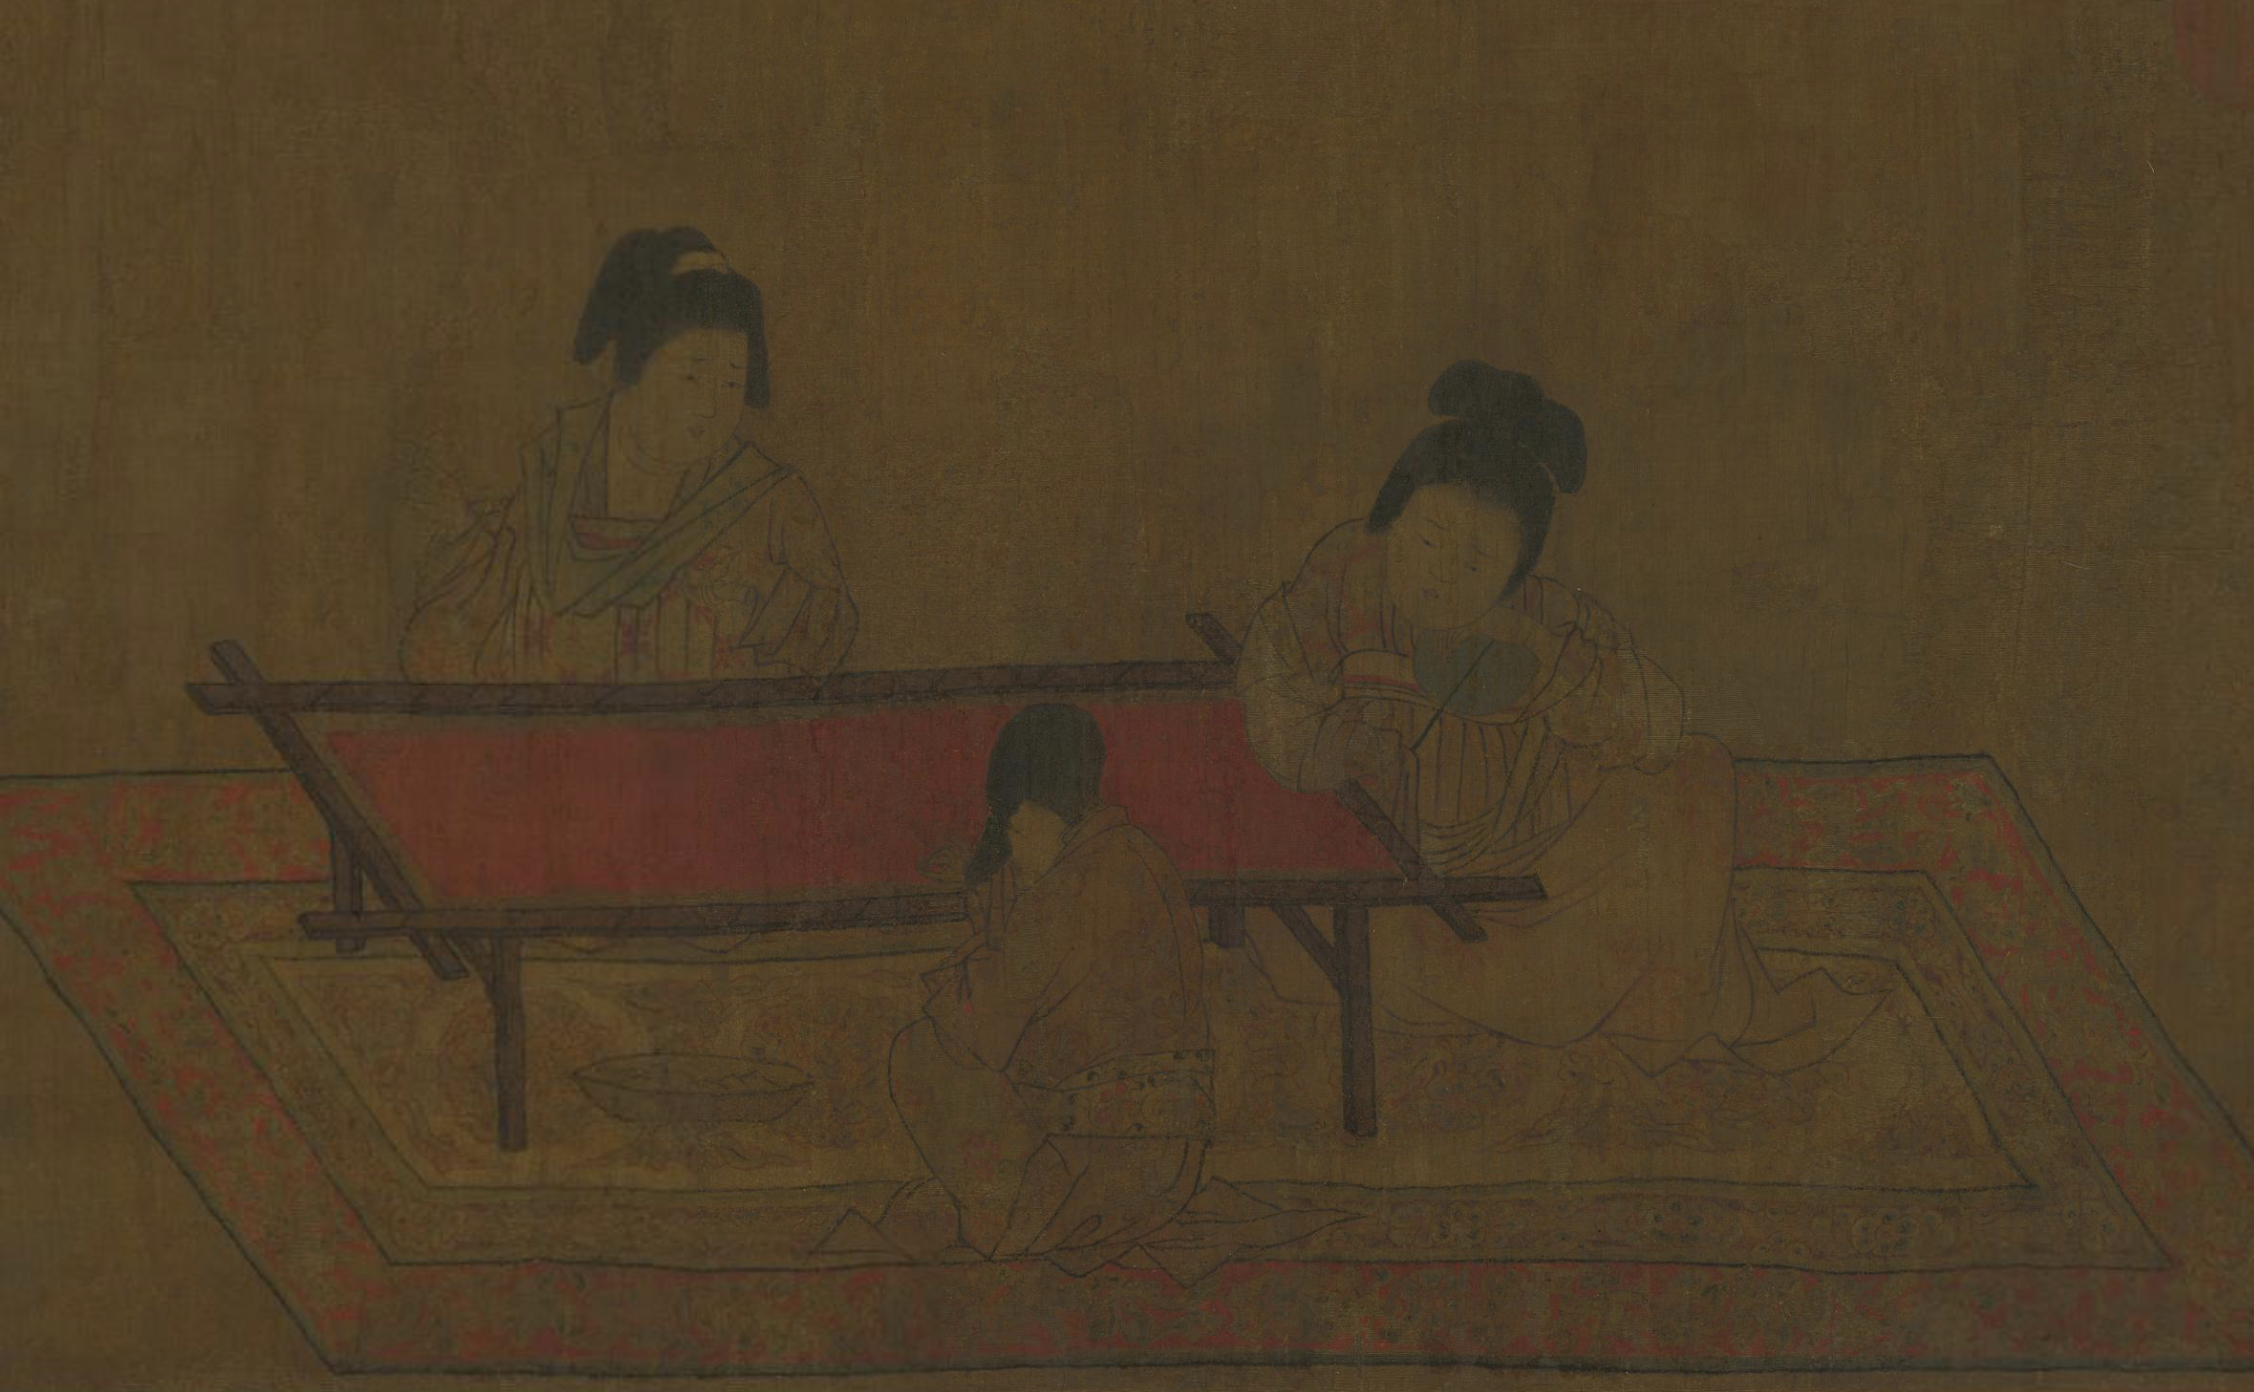 故宫藏画里的“她”：或乘鸾，或理妆，或听阮，或奏乐